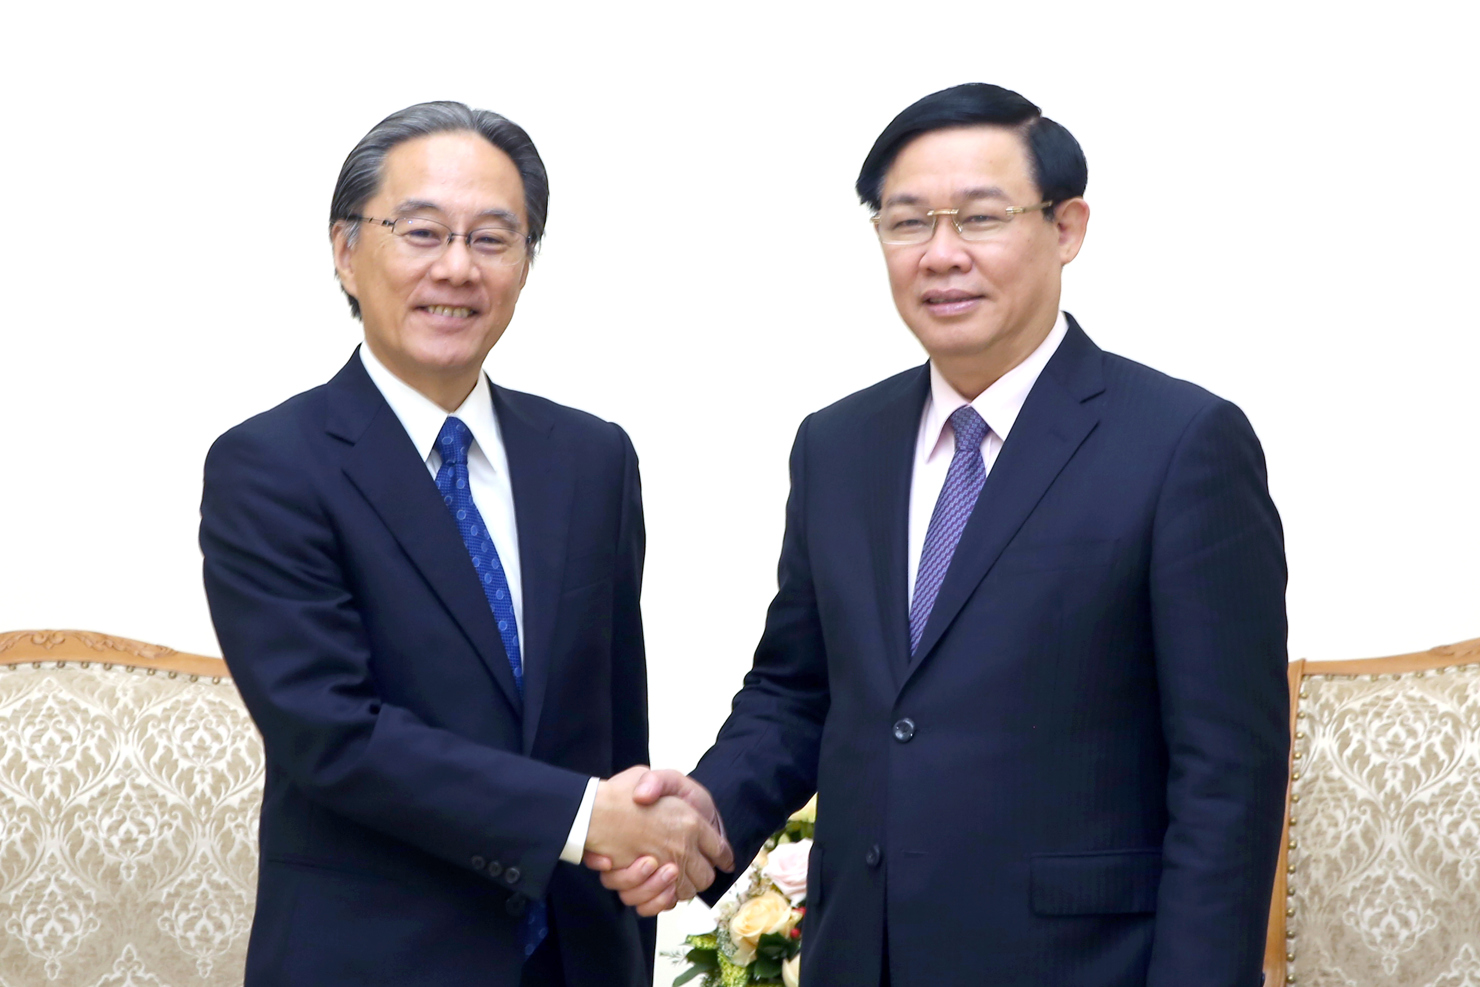 Phó Thủ tướng Vương Đình Huệ và Chủ tịch Công ty dịch vụ tài chính Aeon Masaki Suzuki.